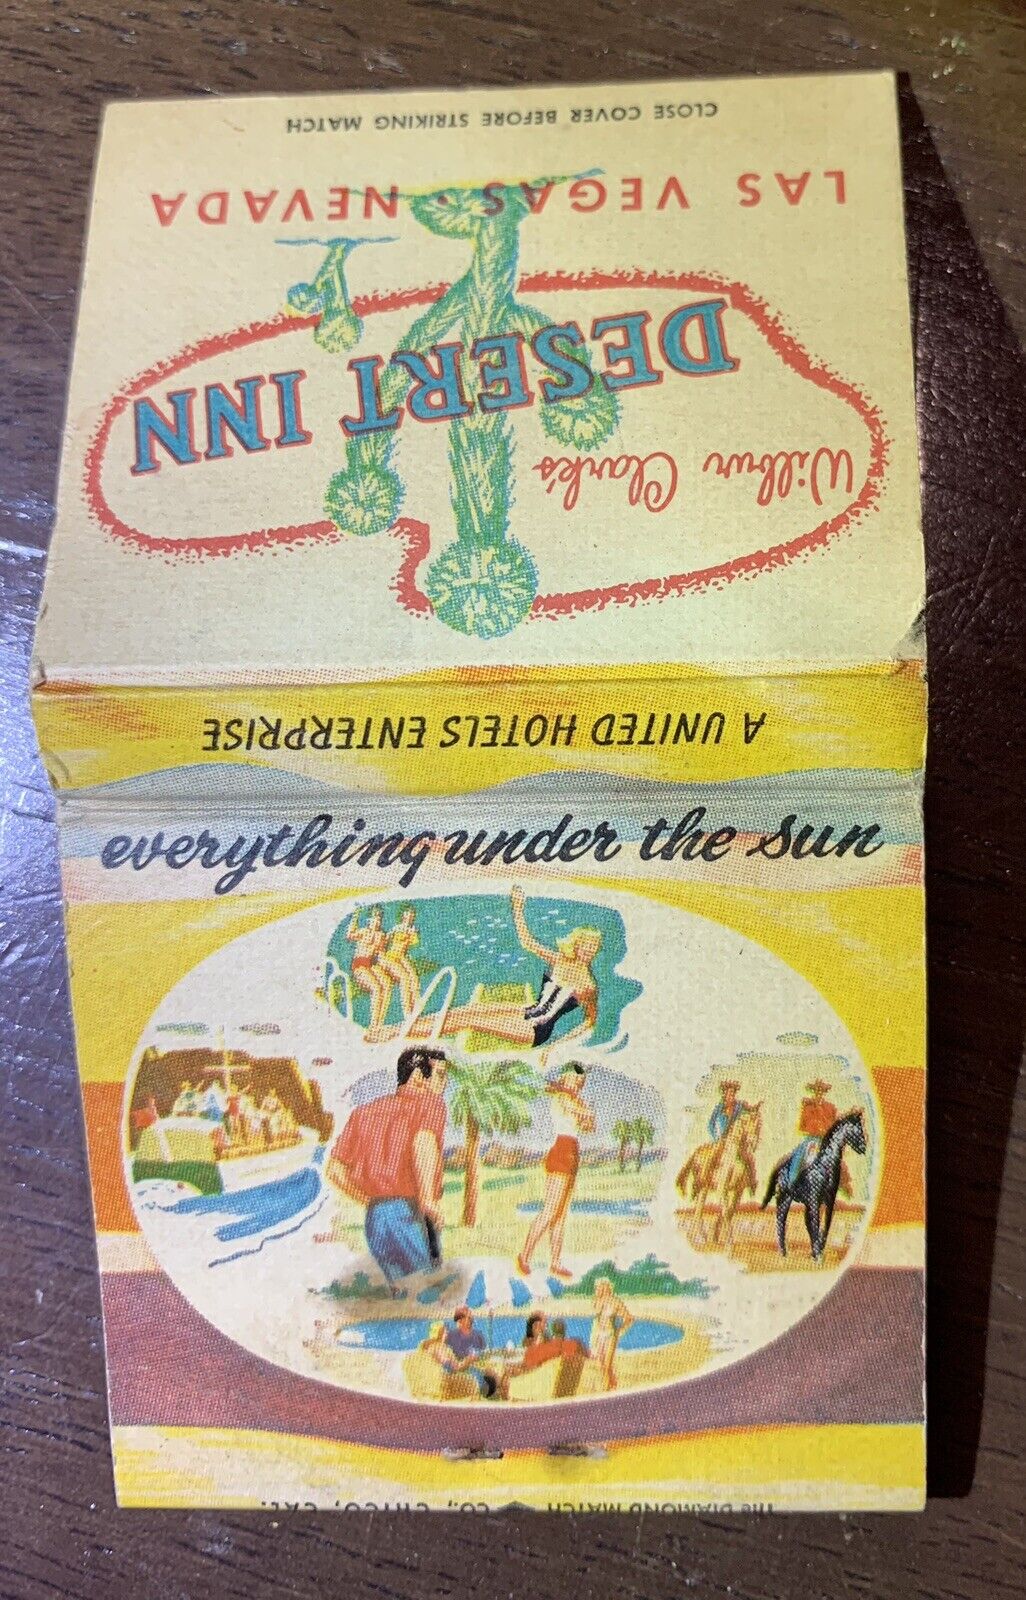 Vintage feature match book “Las Vegas”